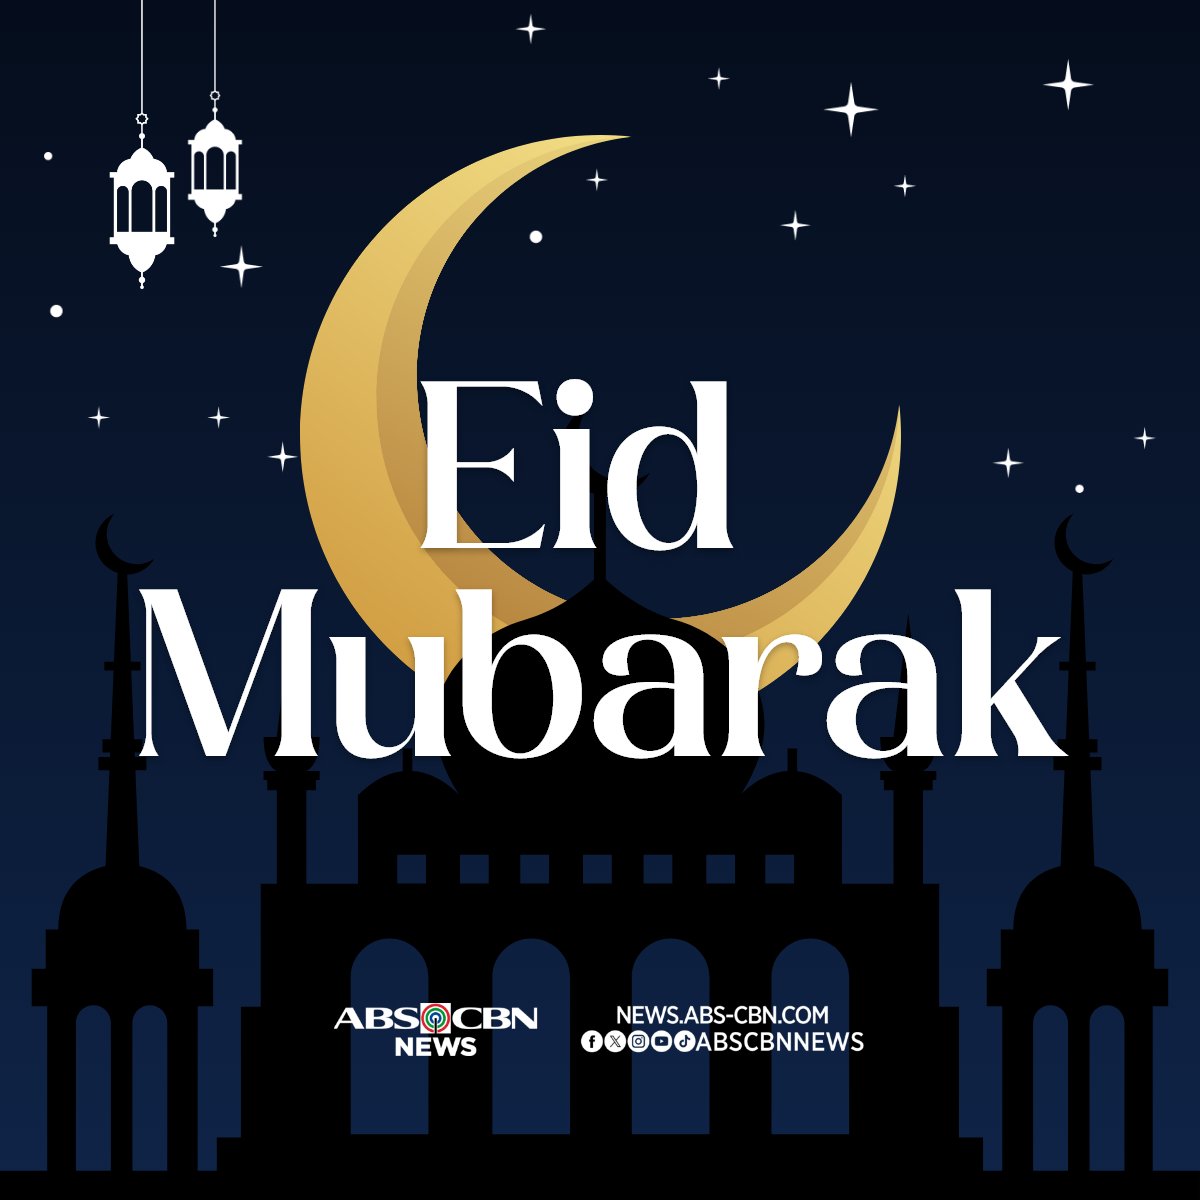 Eid Mubarak! Ipinagdiriwang ngayon ng ating mga Kapamilyang Muslim ang Eid'l Fitr o ang pagtatapos ng buwan ng Ramadan.